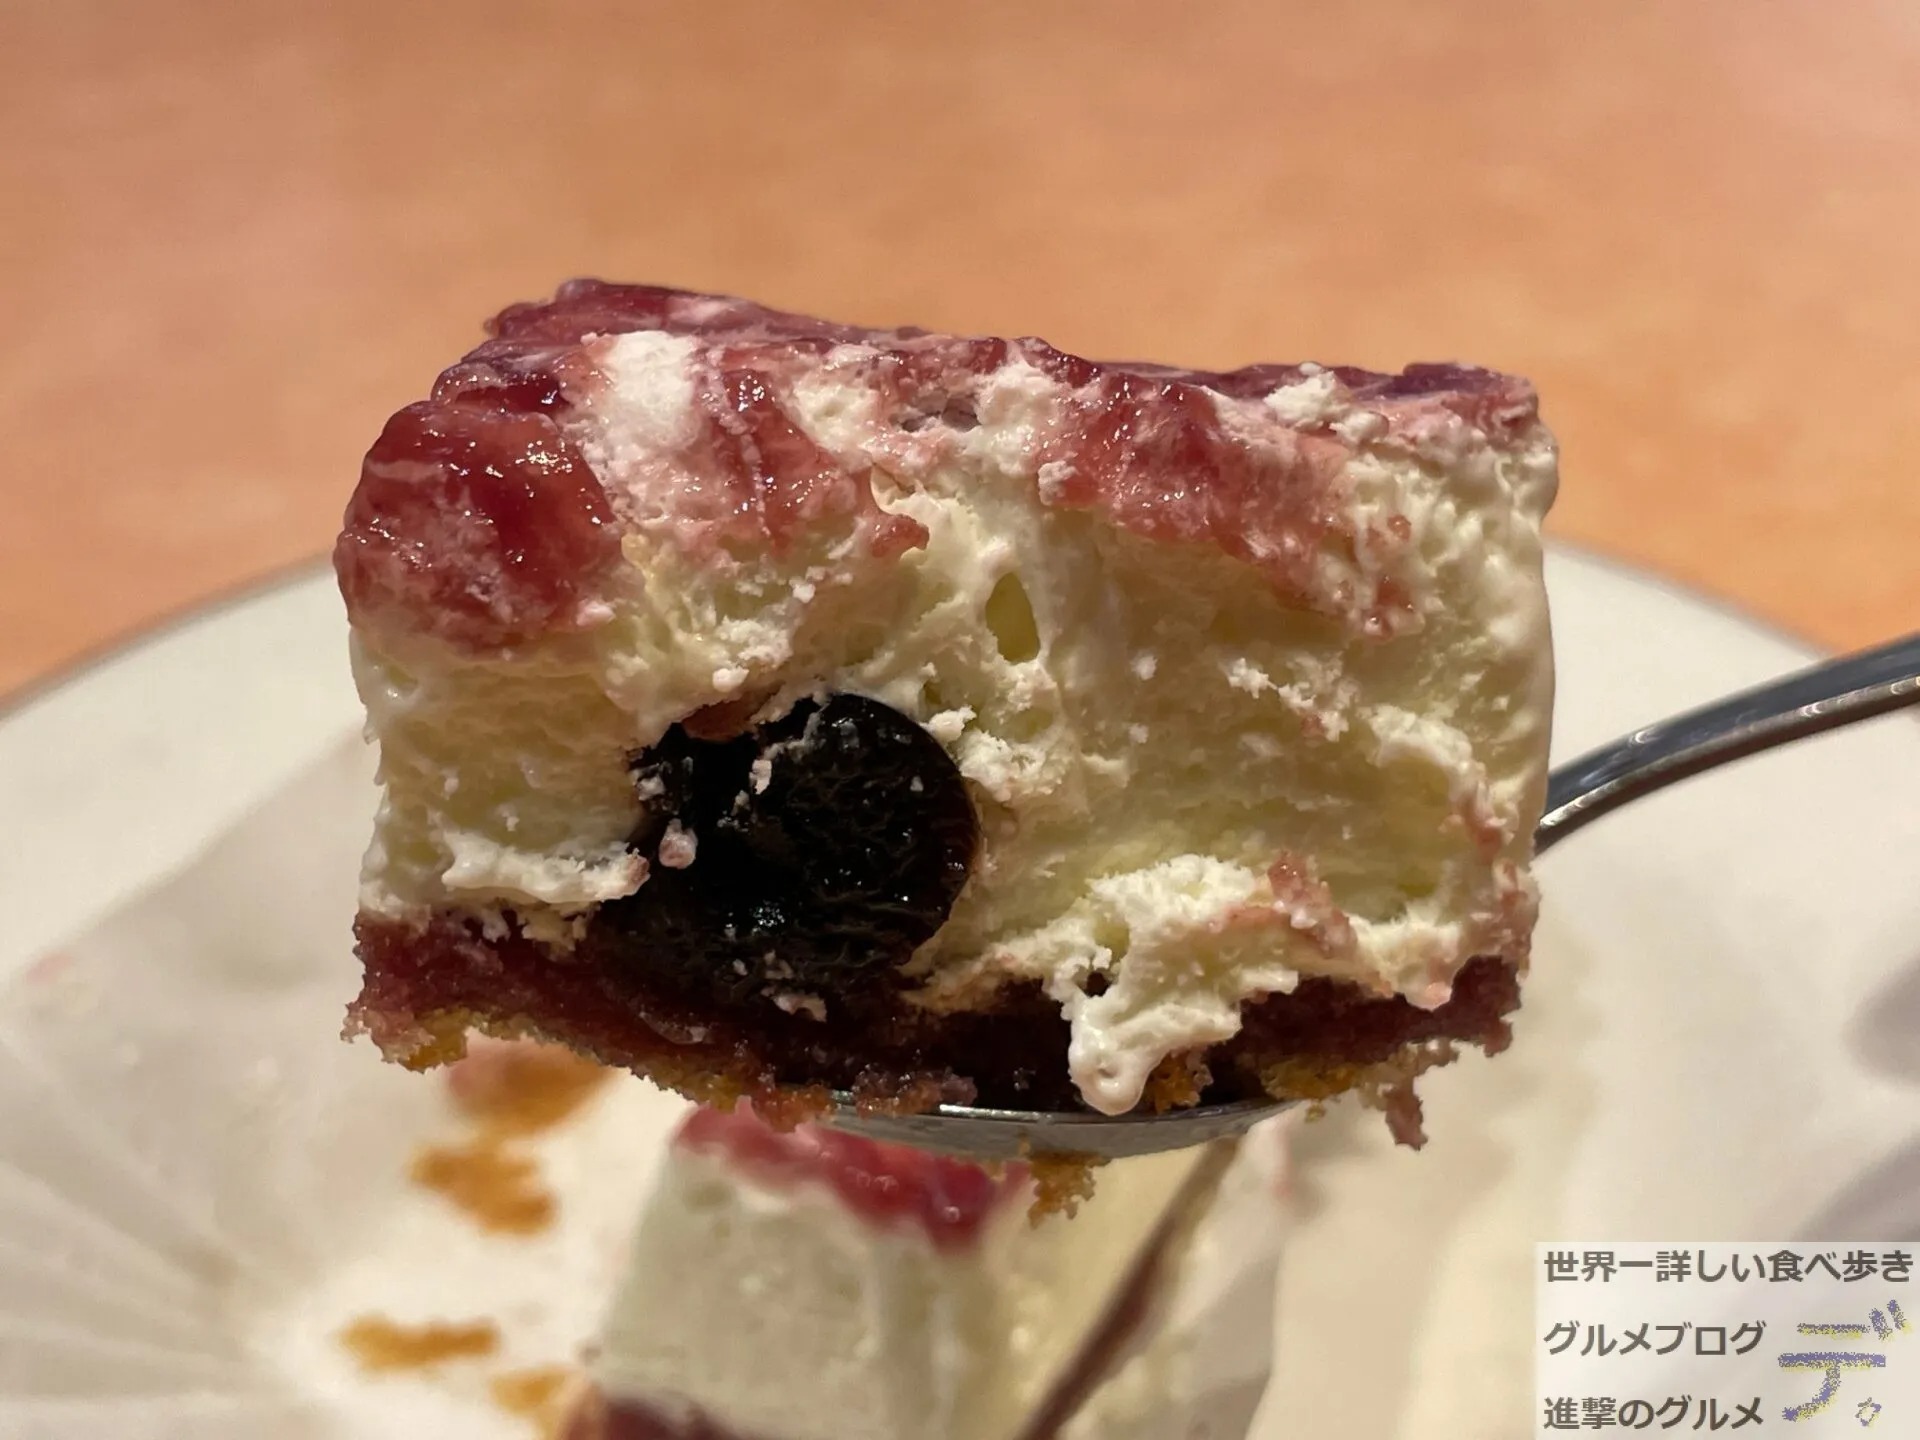 サイゼリヤの0円アイスケーキ アマレーナ を実食レポ 進撃のグルメ Yahoo Japan クリエイターズプログラム